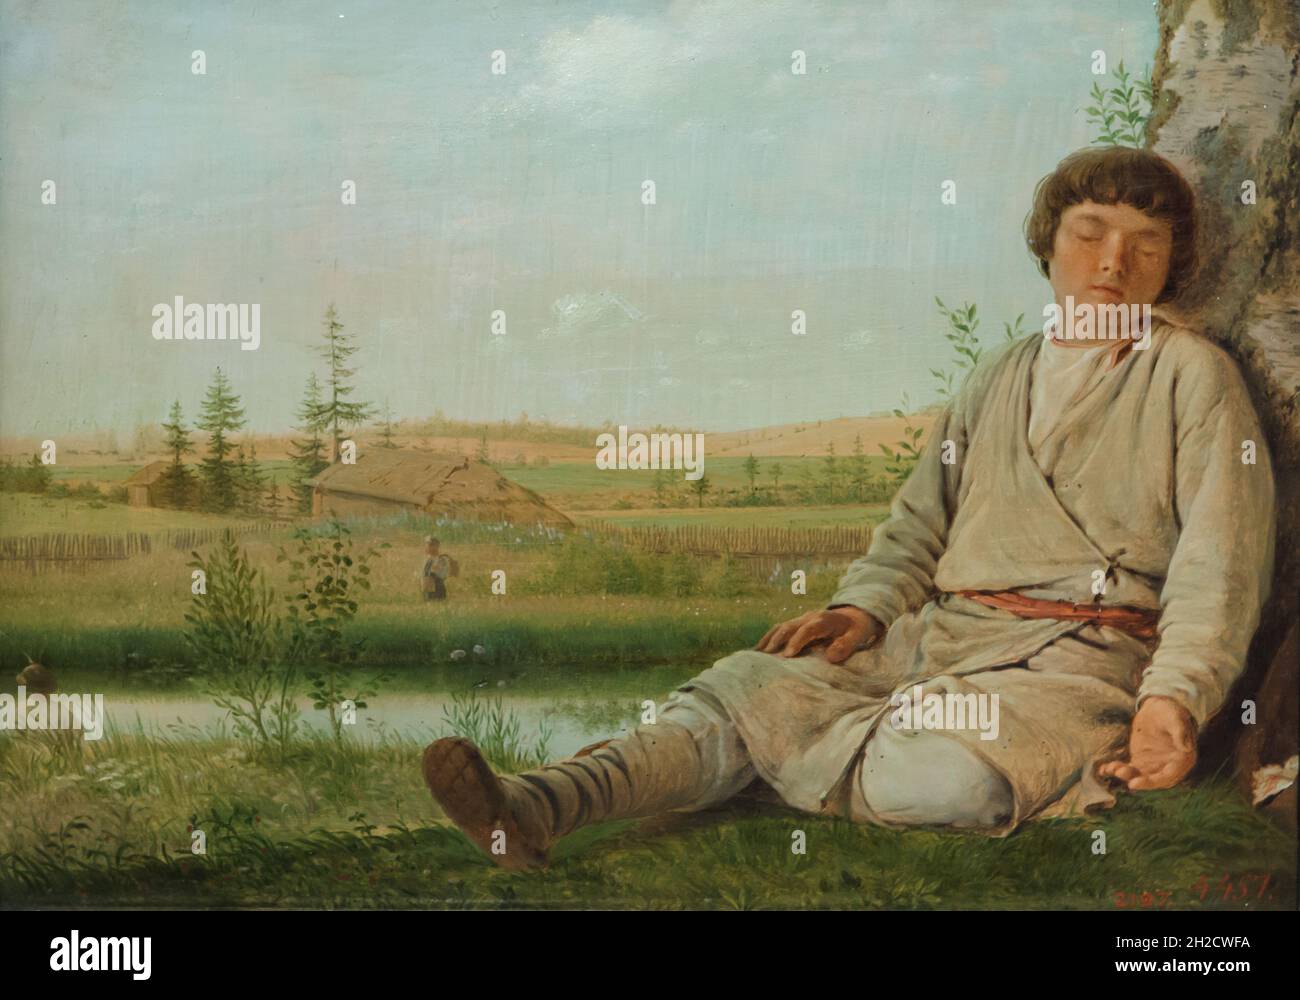 Gemälde „Sleeping Shepherd Boy“ des russischen romantischen Malers Alexey Venetsianov (1823-1826). Stockfoto